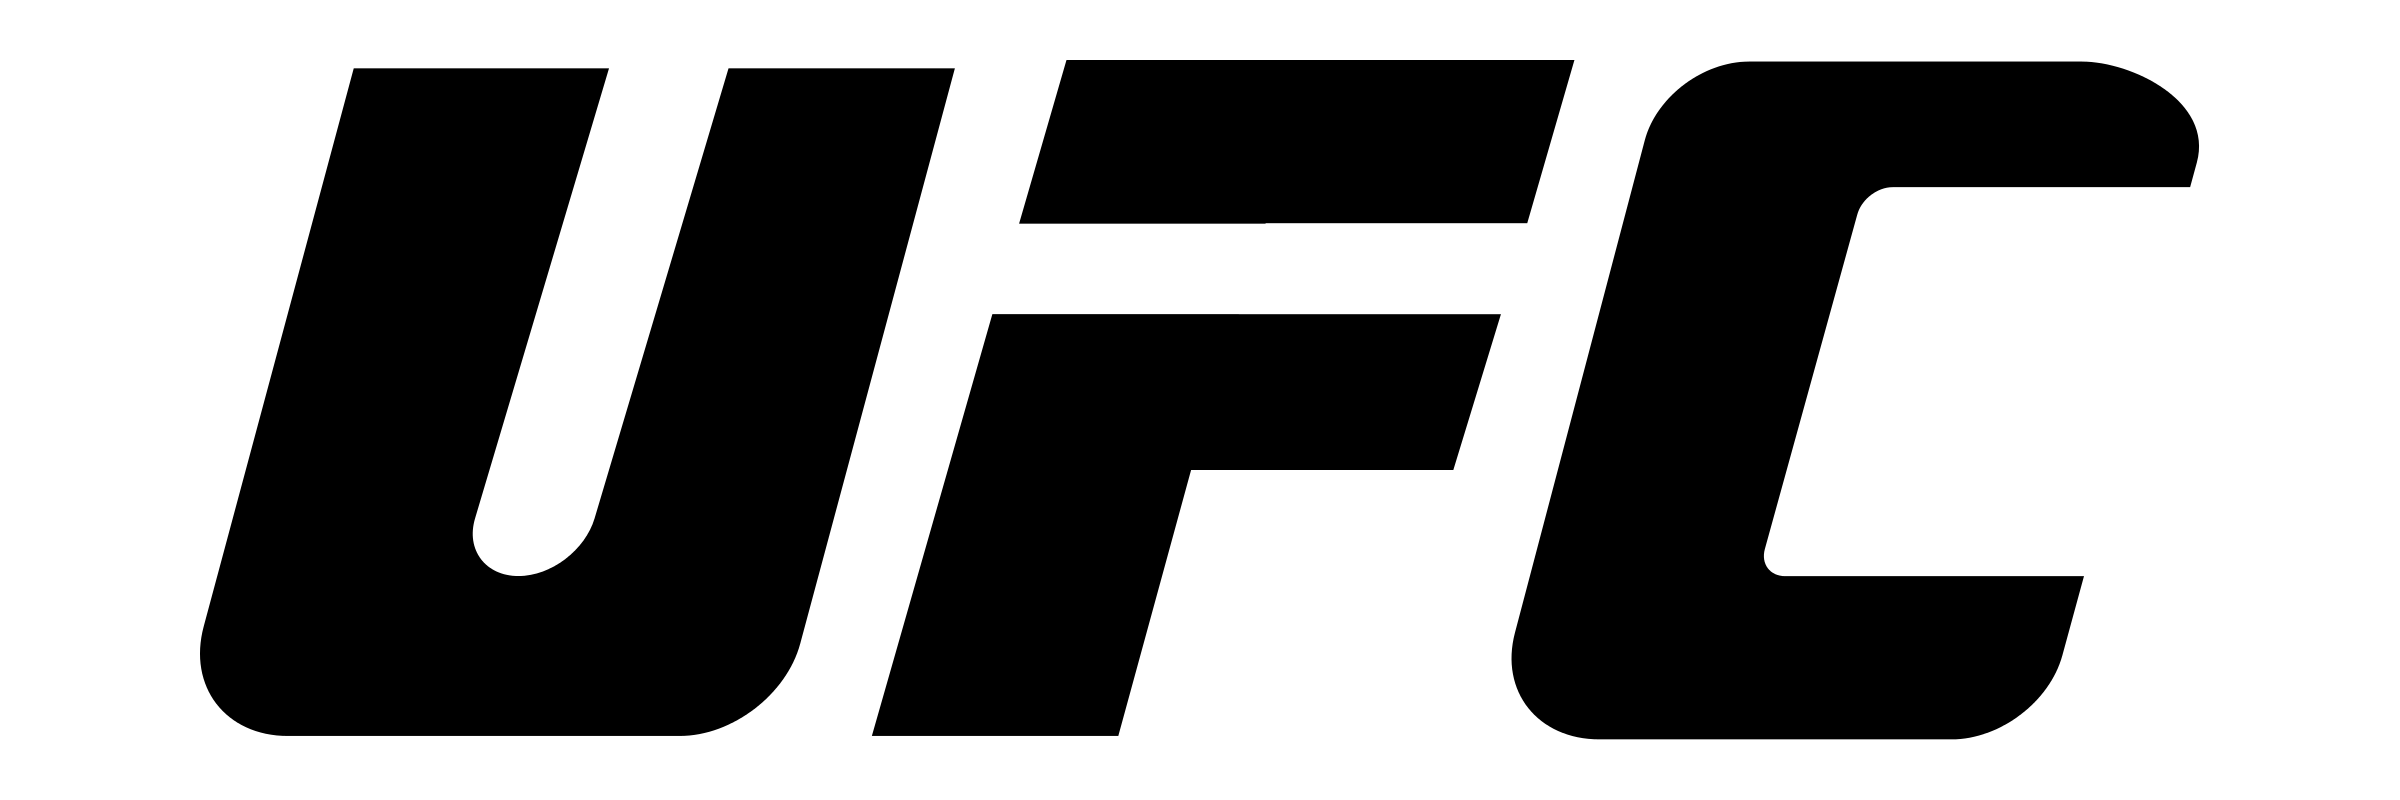 Download UFC Logo - LogoDix